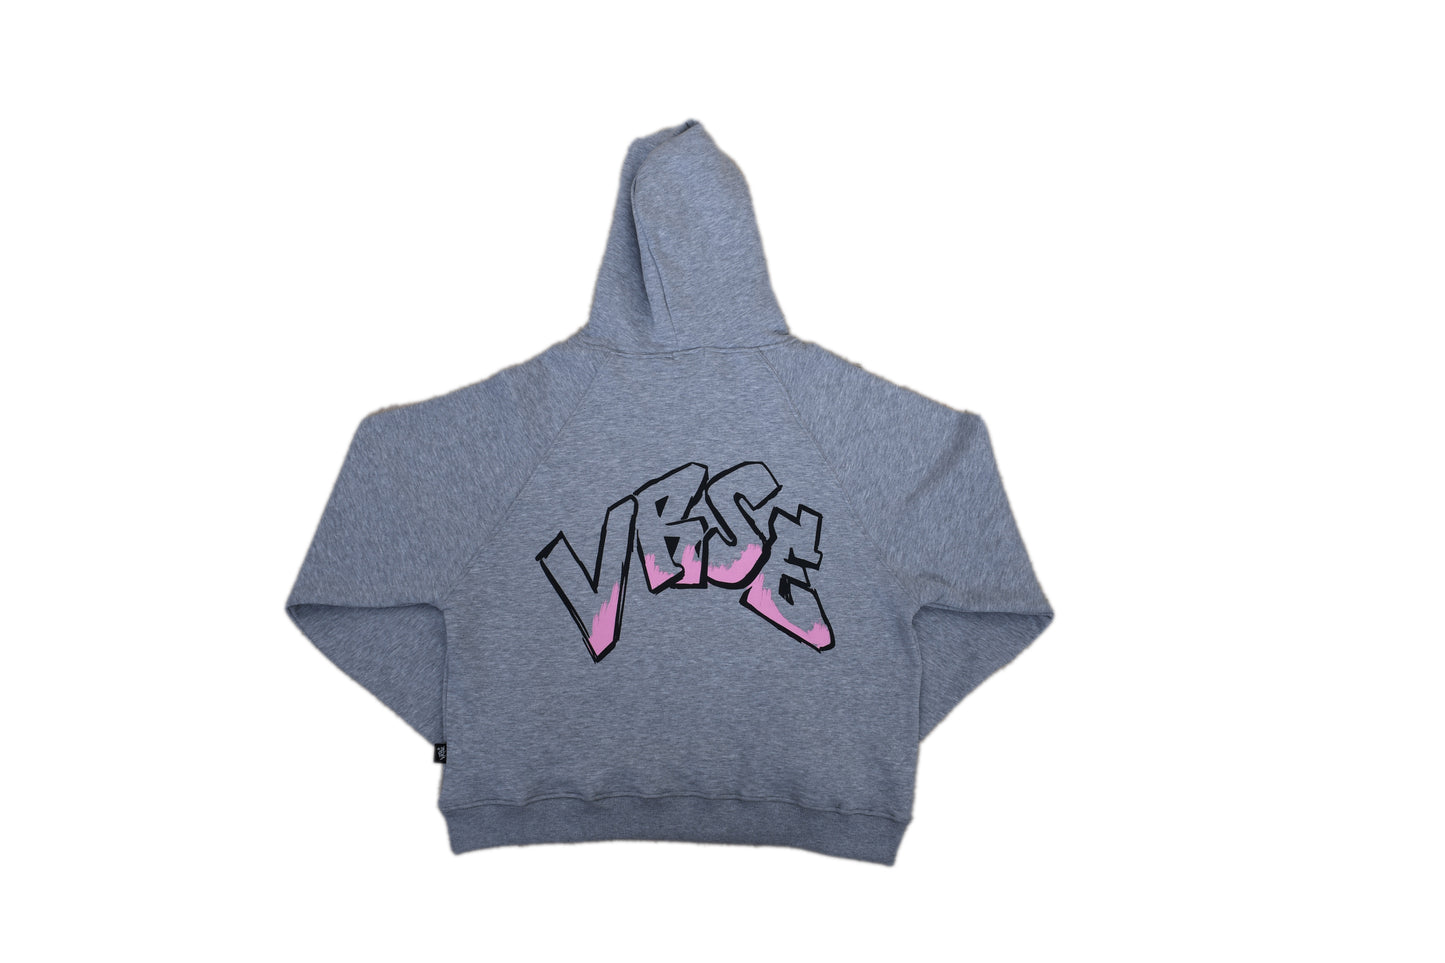 The "VRSE" Hoodie (Pink on Grey)